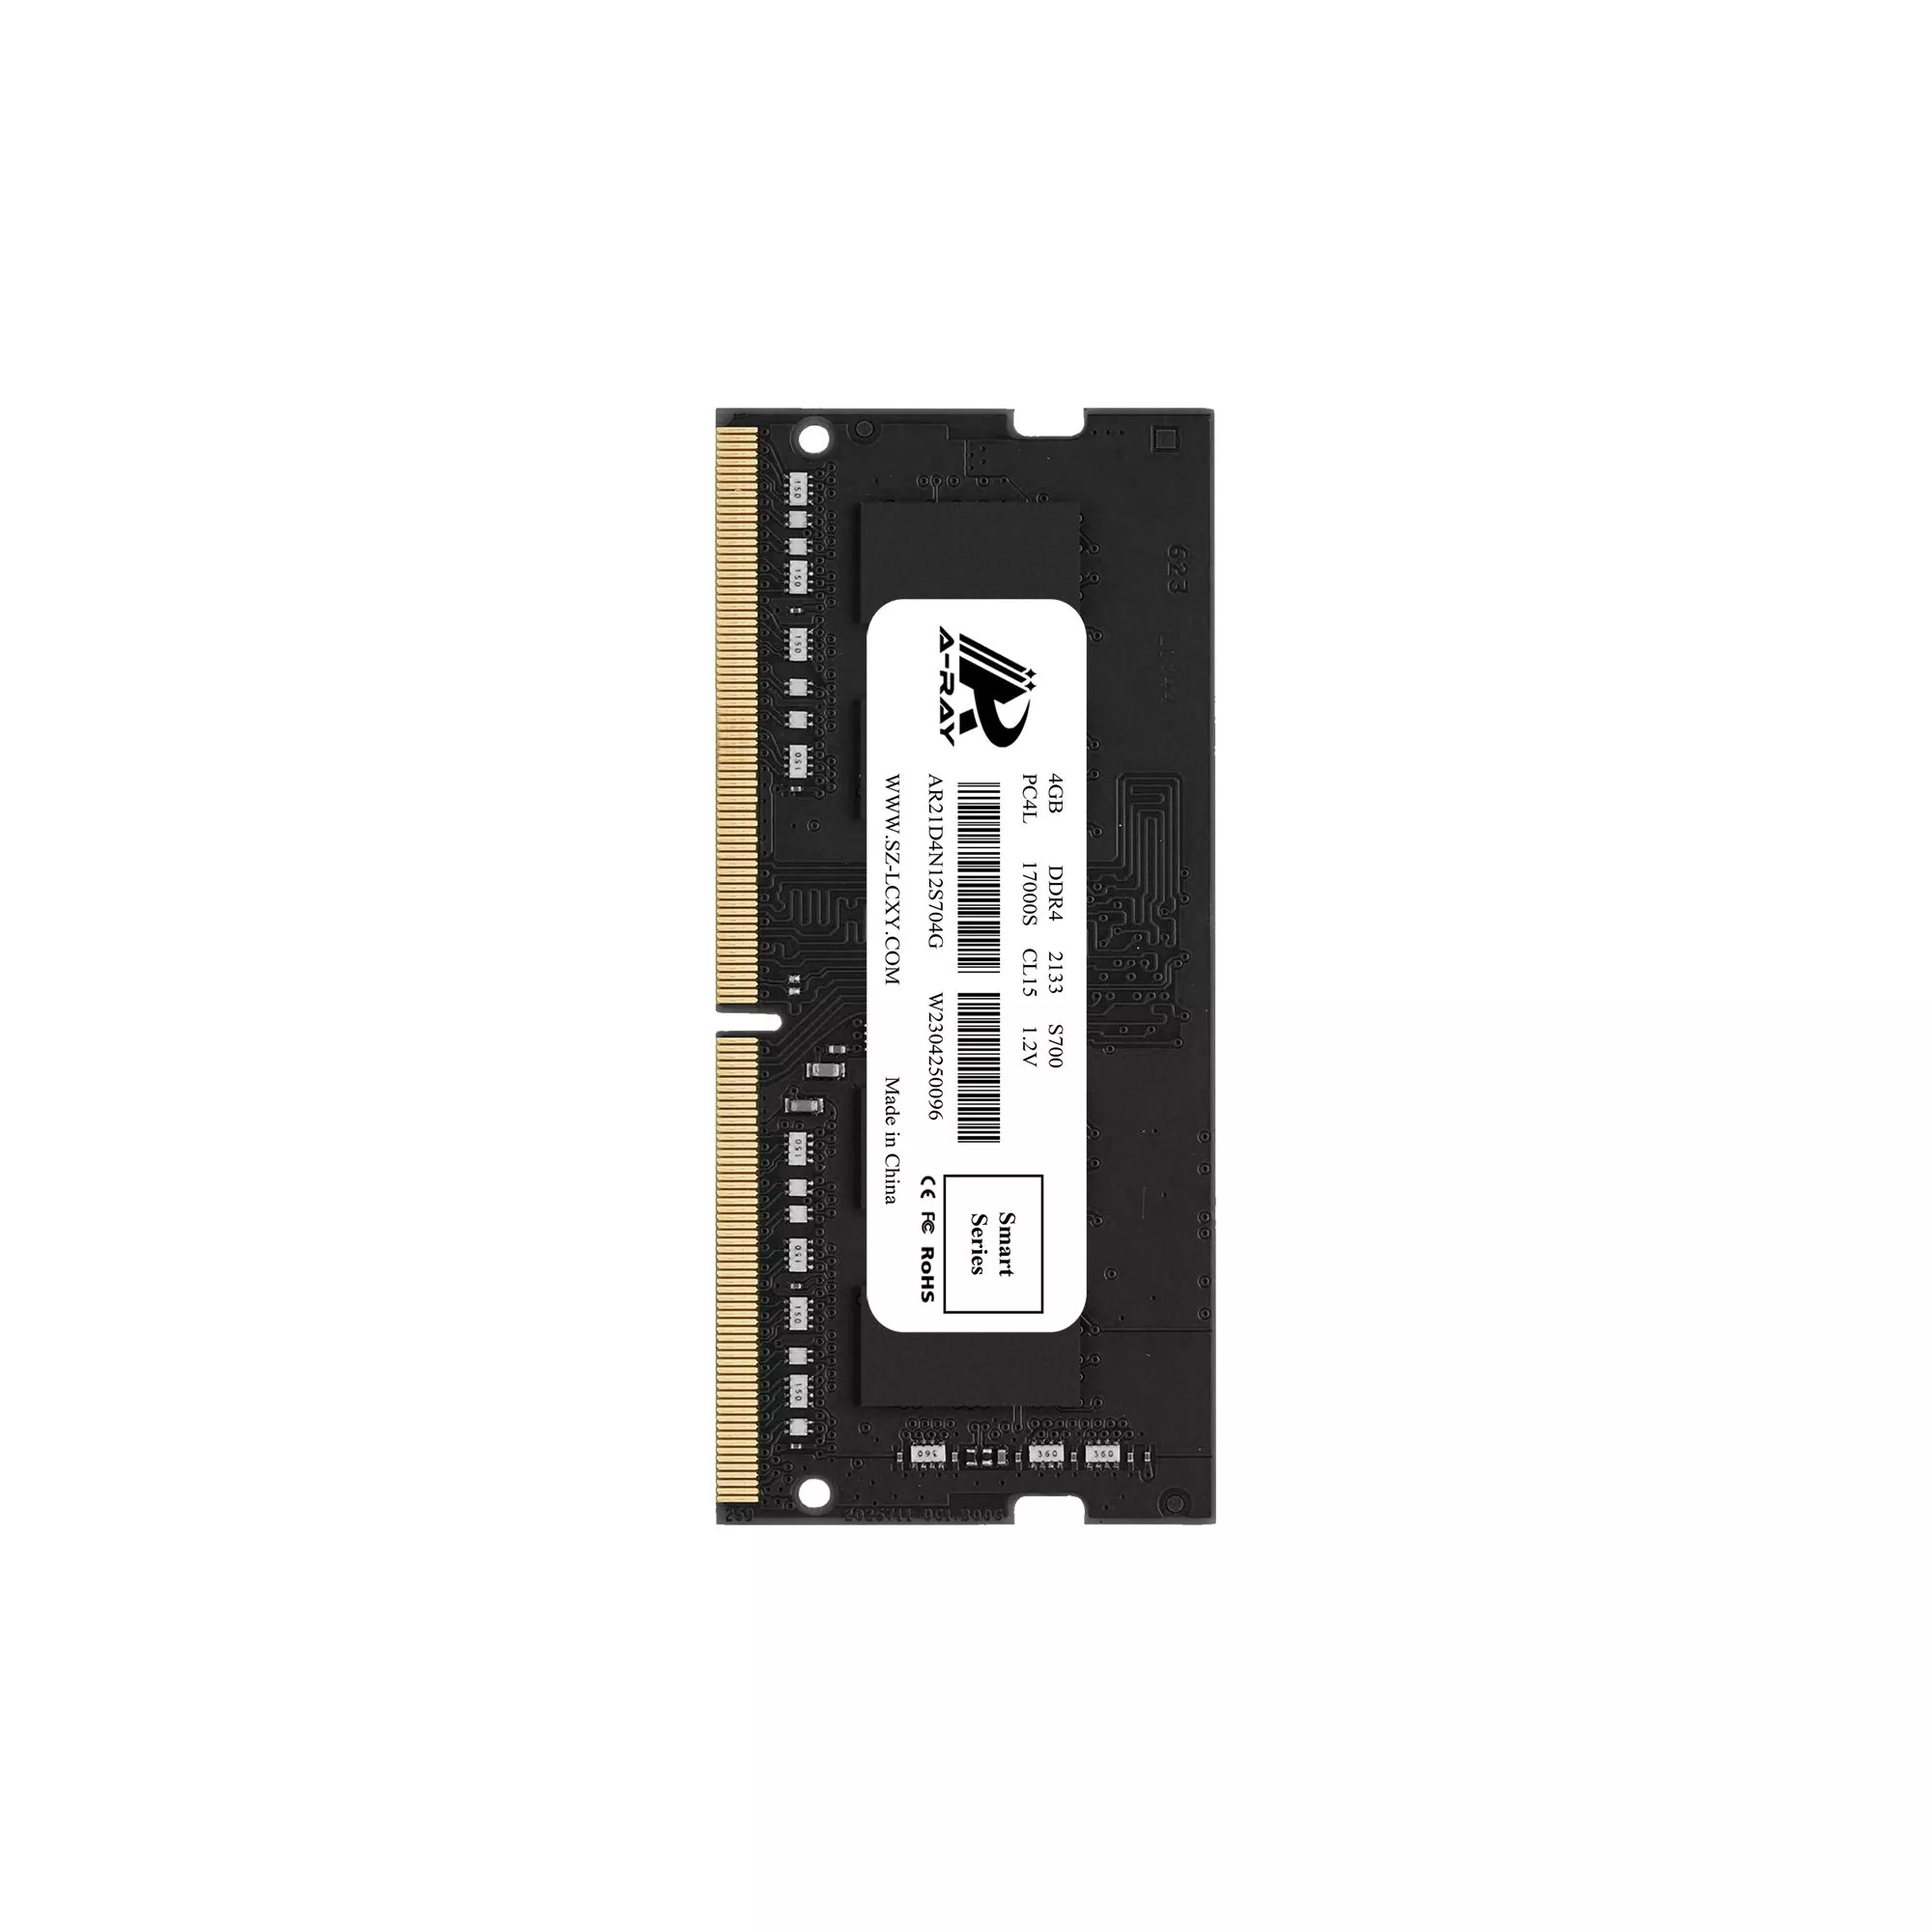 Bộ nhớ trong Ram A-Ray 4GB DDR4 Bus 2133 Mhz Laptop S700 17000 MB/s P/N: AR21D4N12S704G